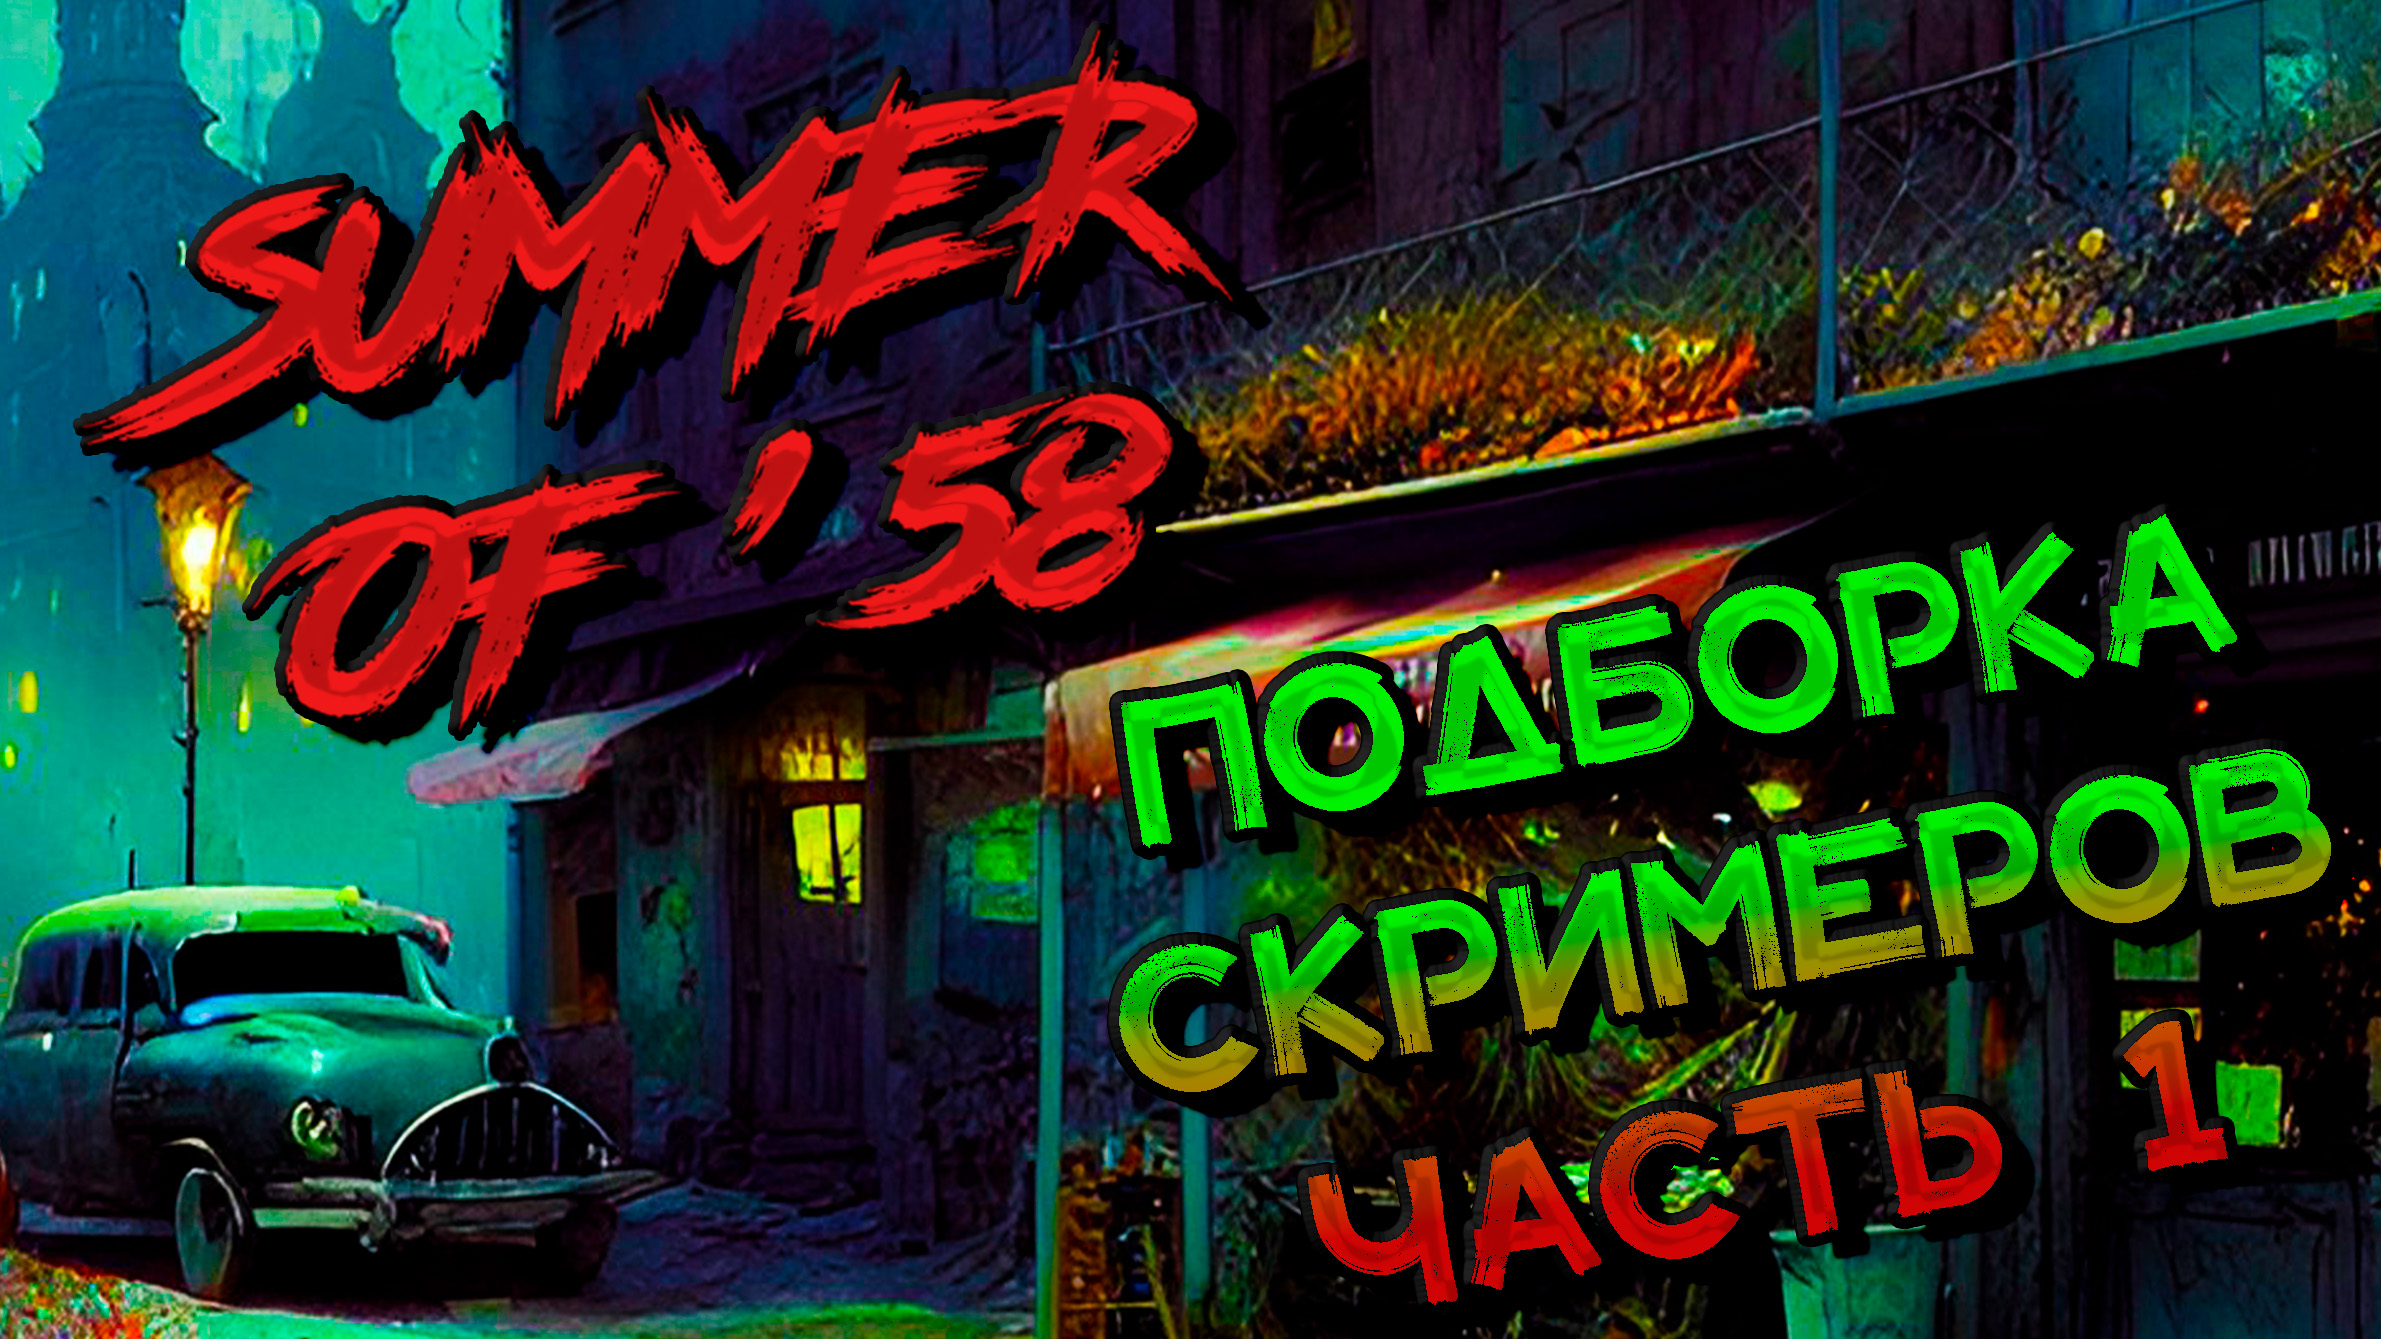 КЛИП | Подборка скримеров Часть 1 | Лето 58 | Summer of` 58